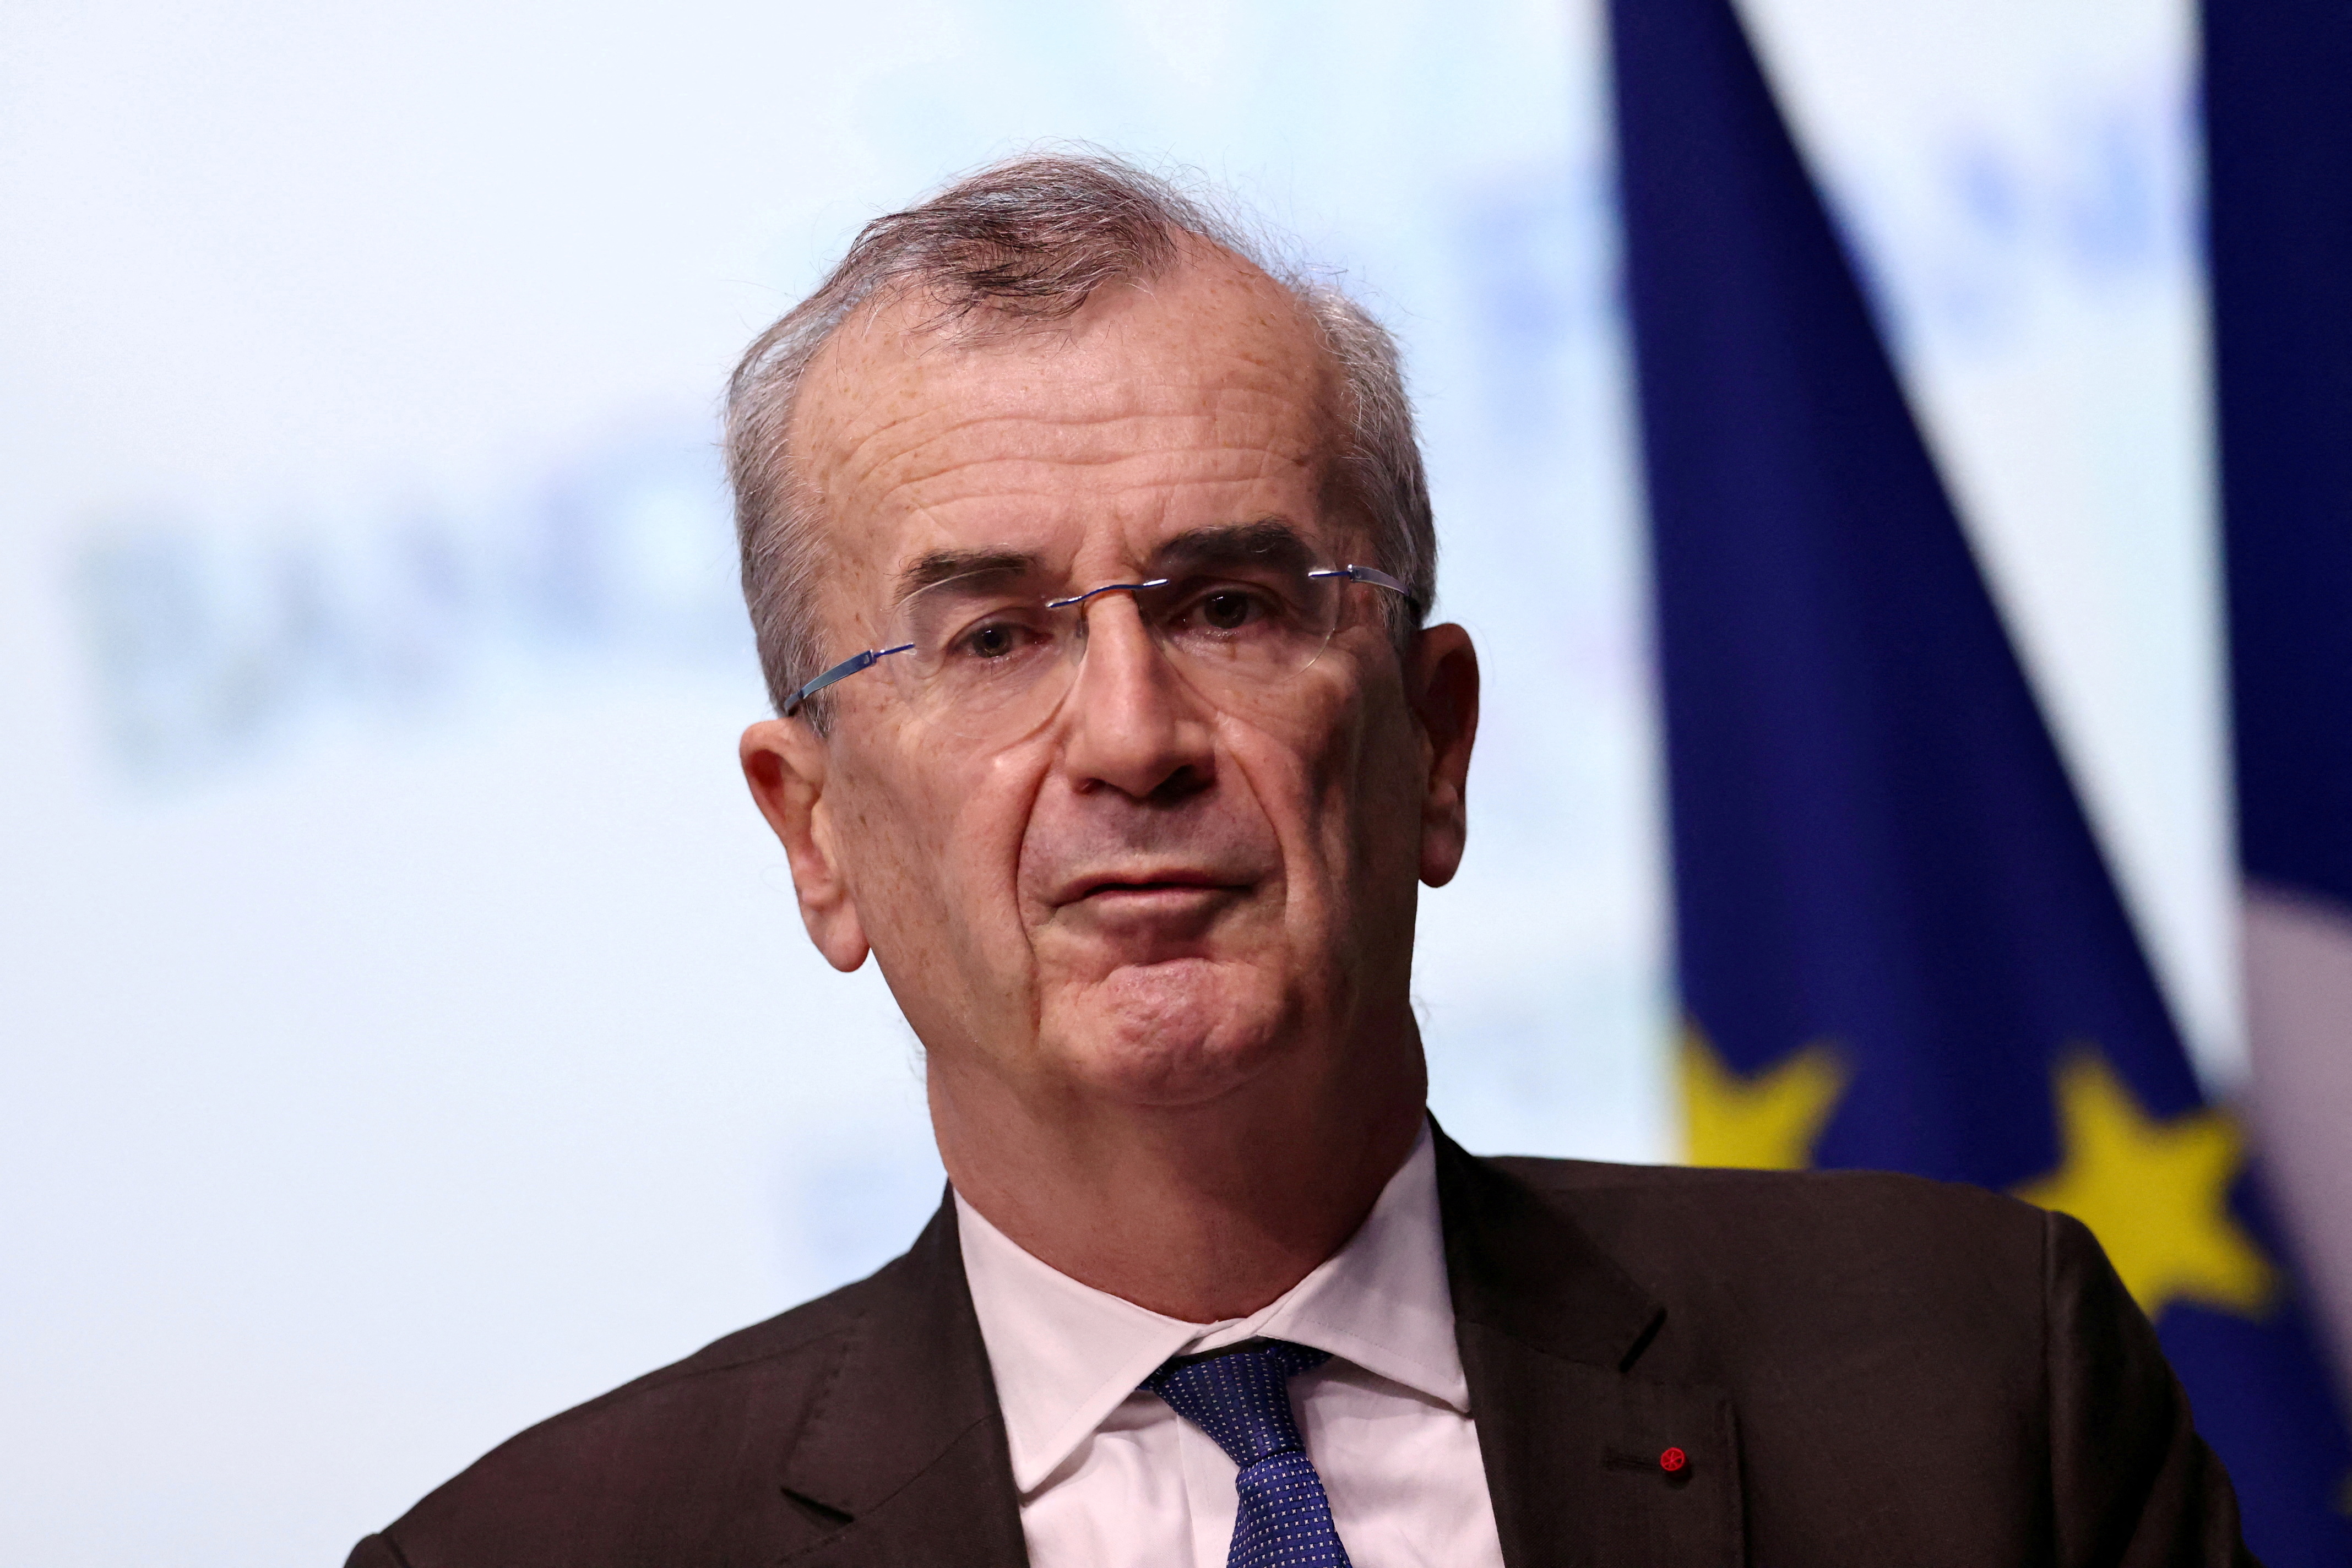 Bank of France Governor Francois Villeroy de Galhau